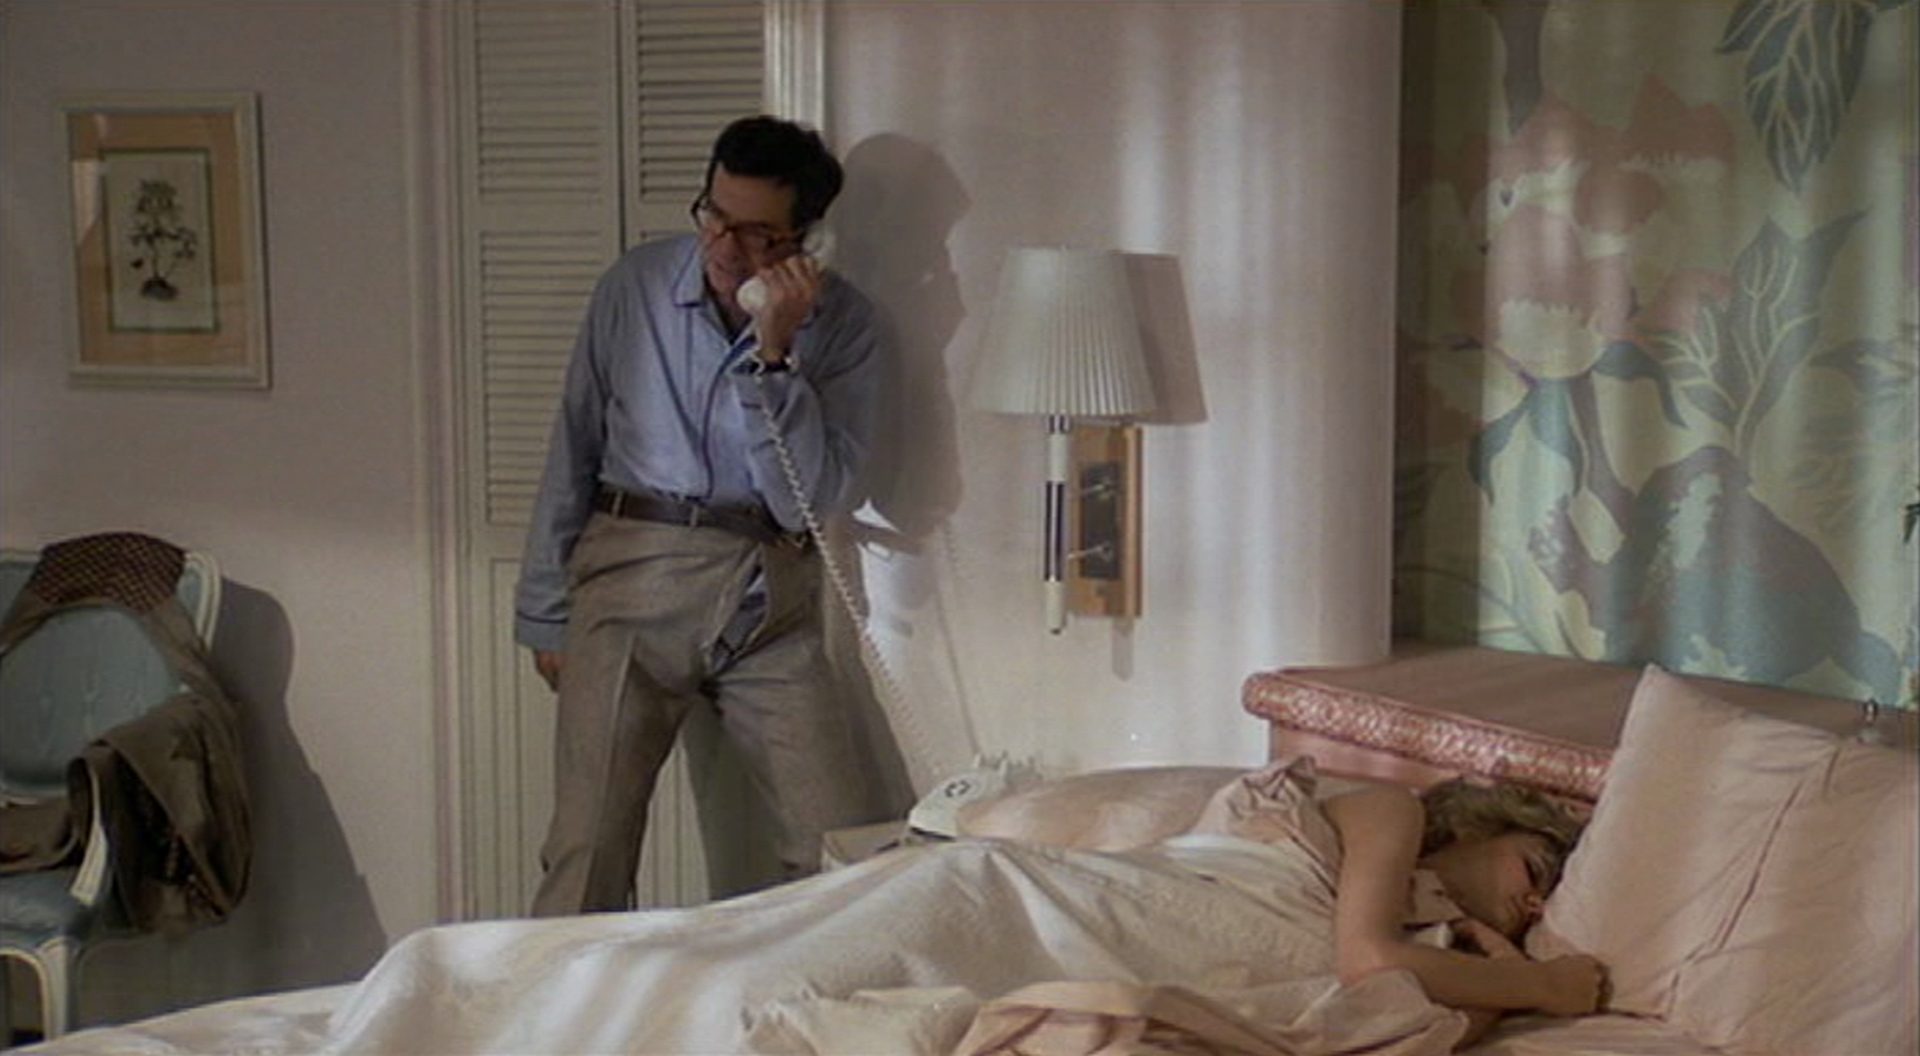 Walter Matthau telefoniert in angestrenger Haltung und offener Hose in seinem Hotelzimmer, während auf dem Bett eine Frau schläft.